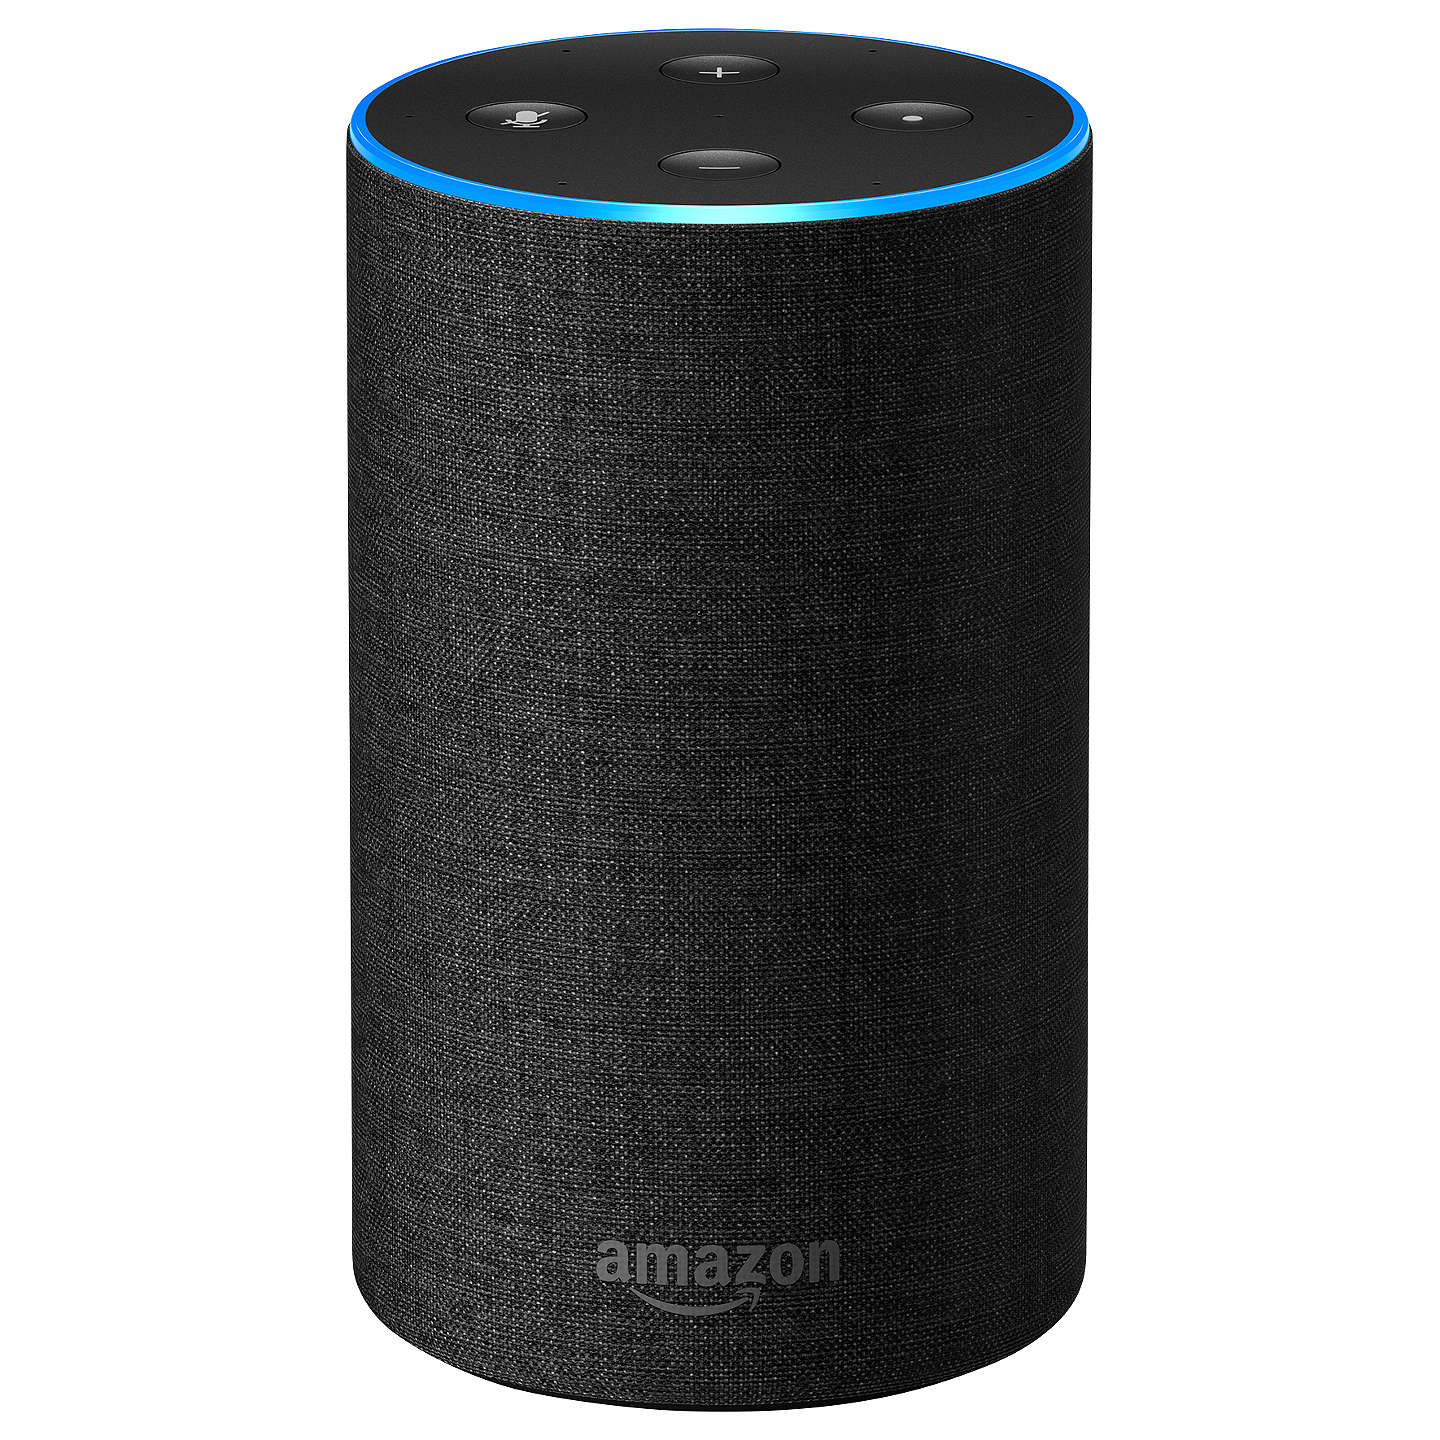 Is Amazon Echo worth buying?